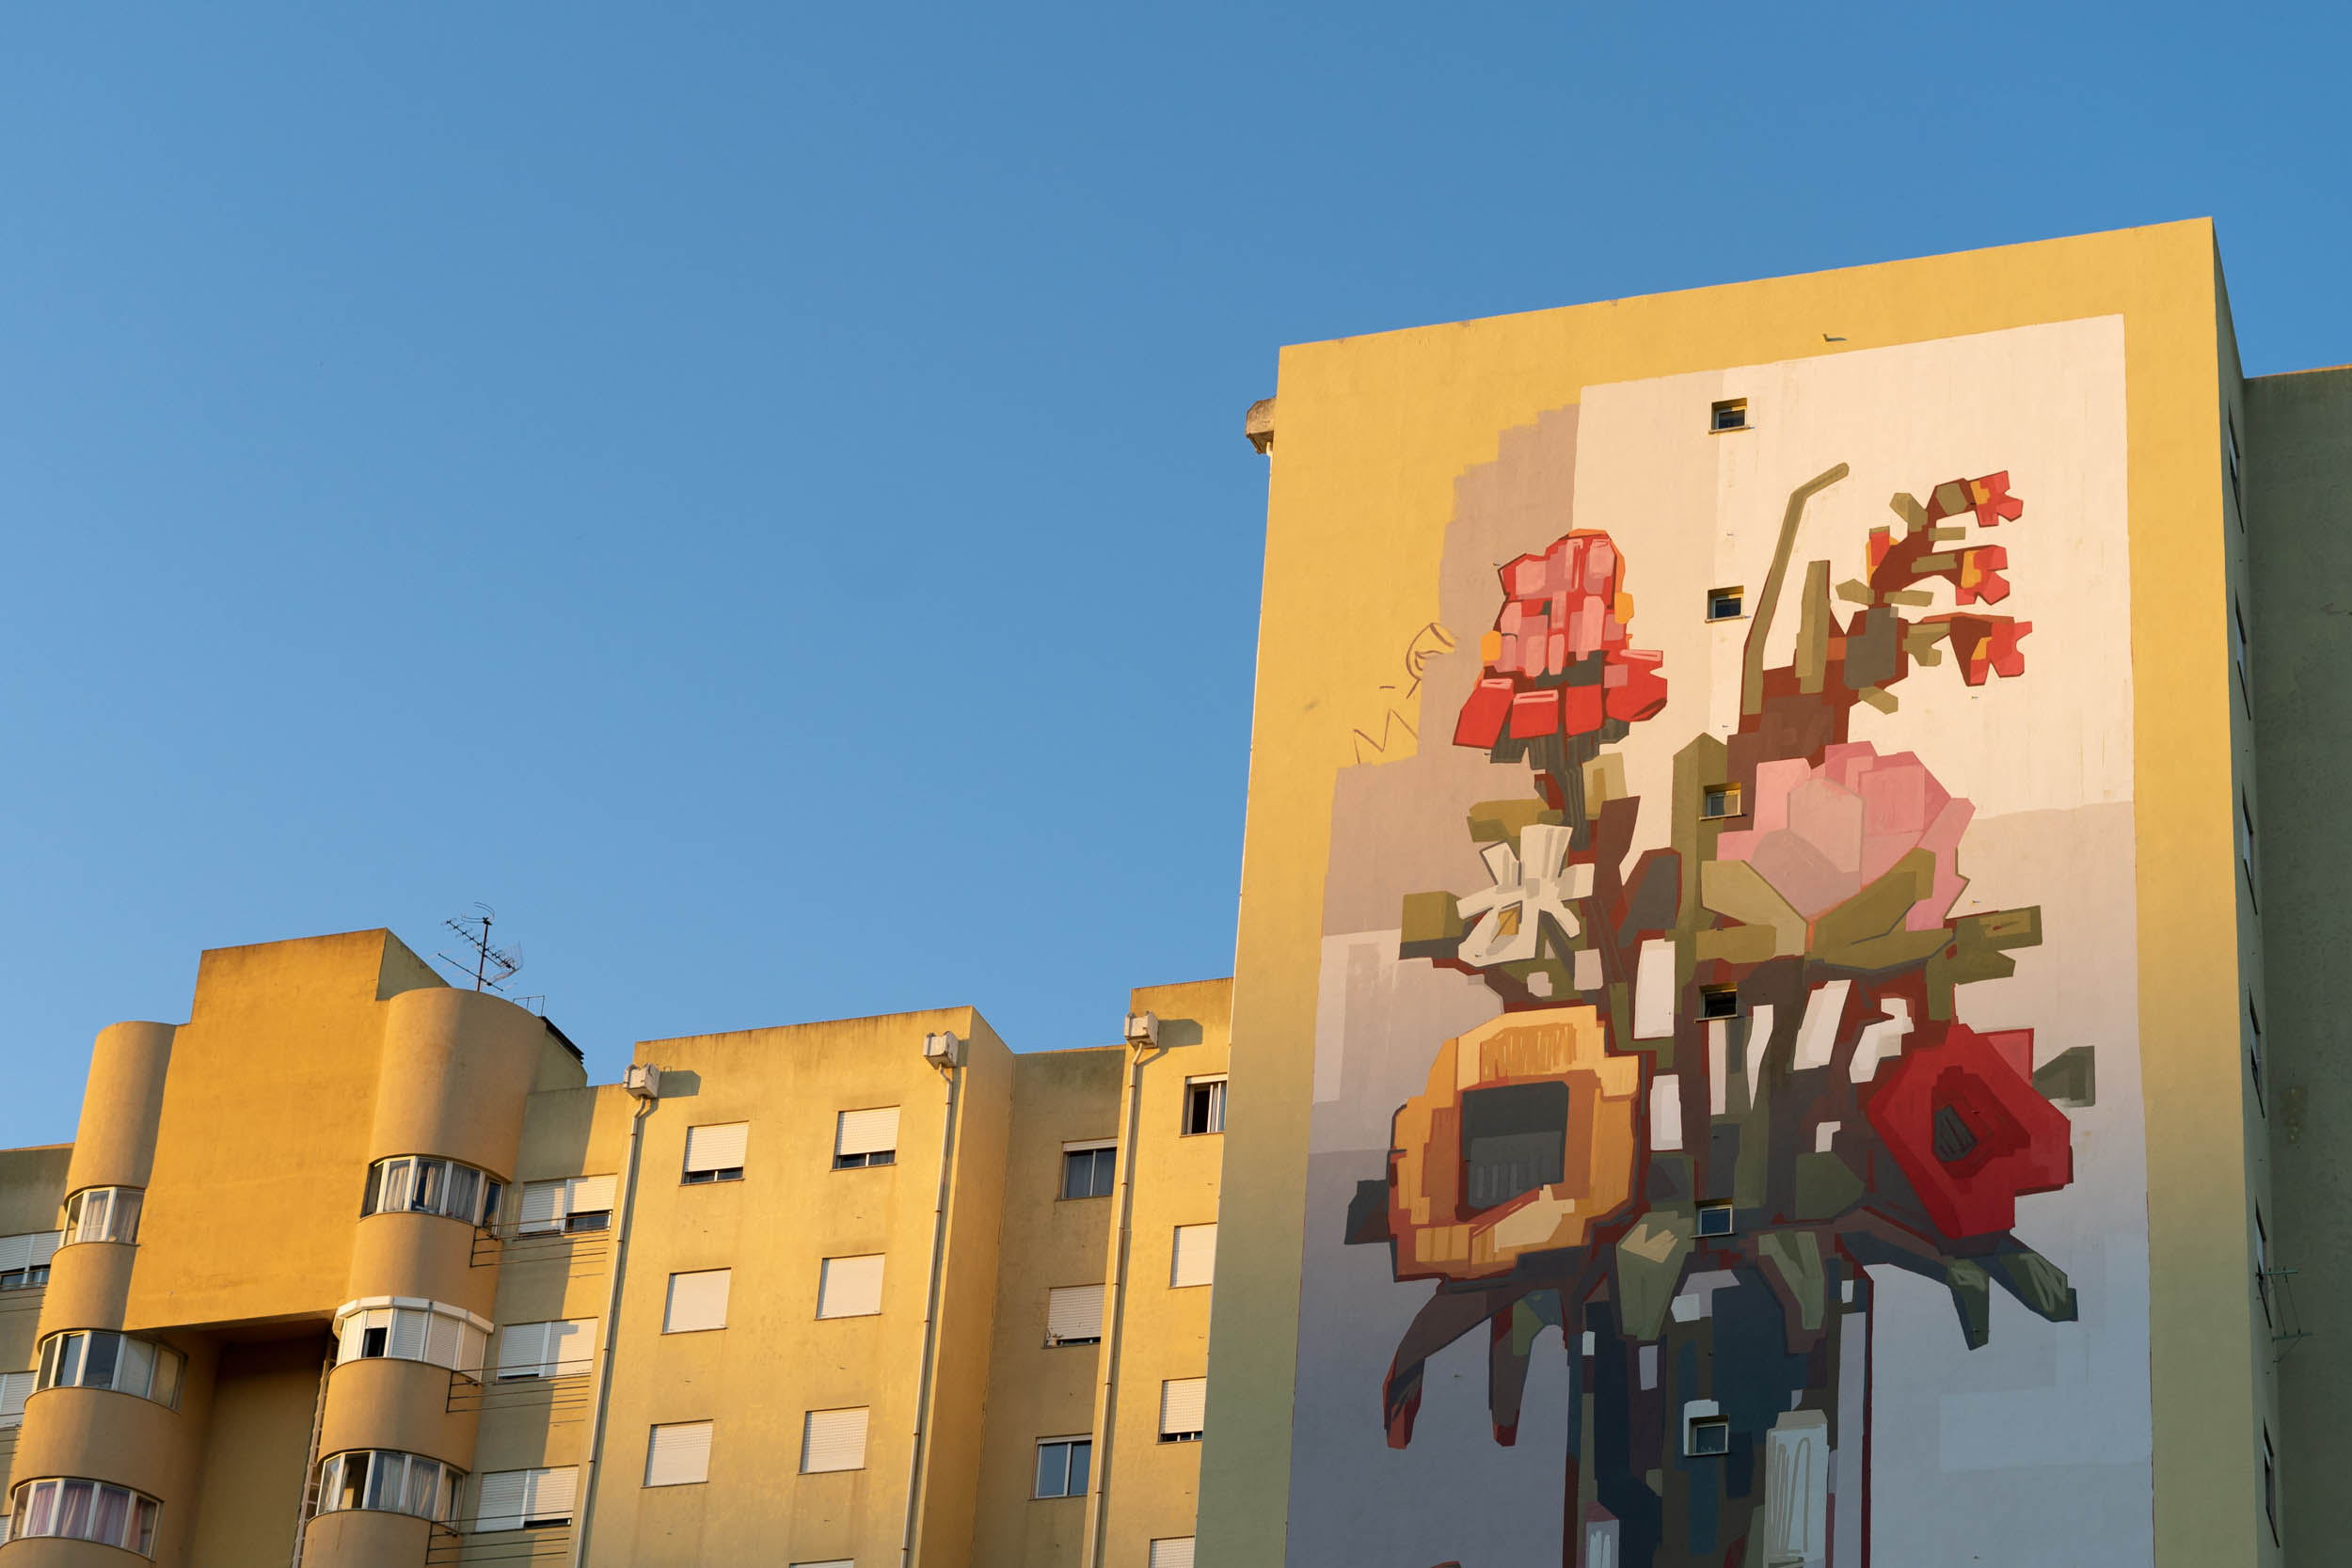 MOTS stworzył mural w Lizbonie